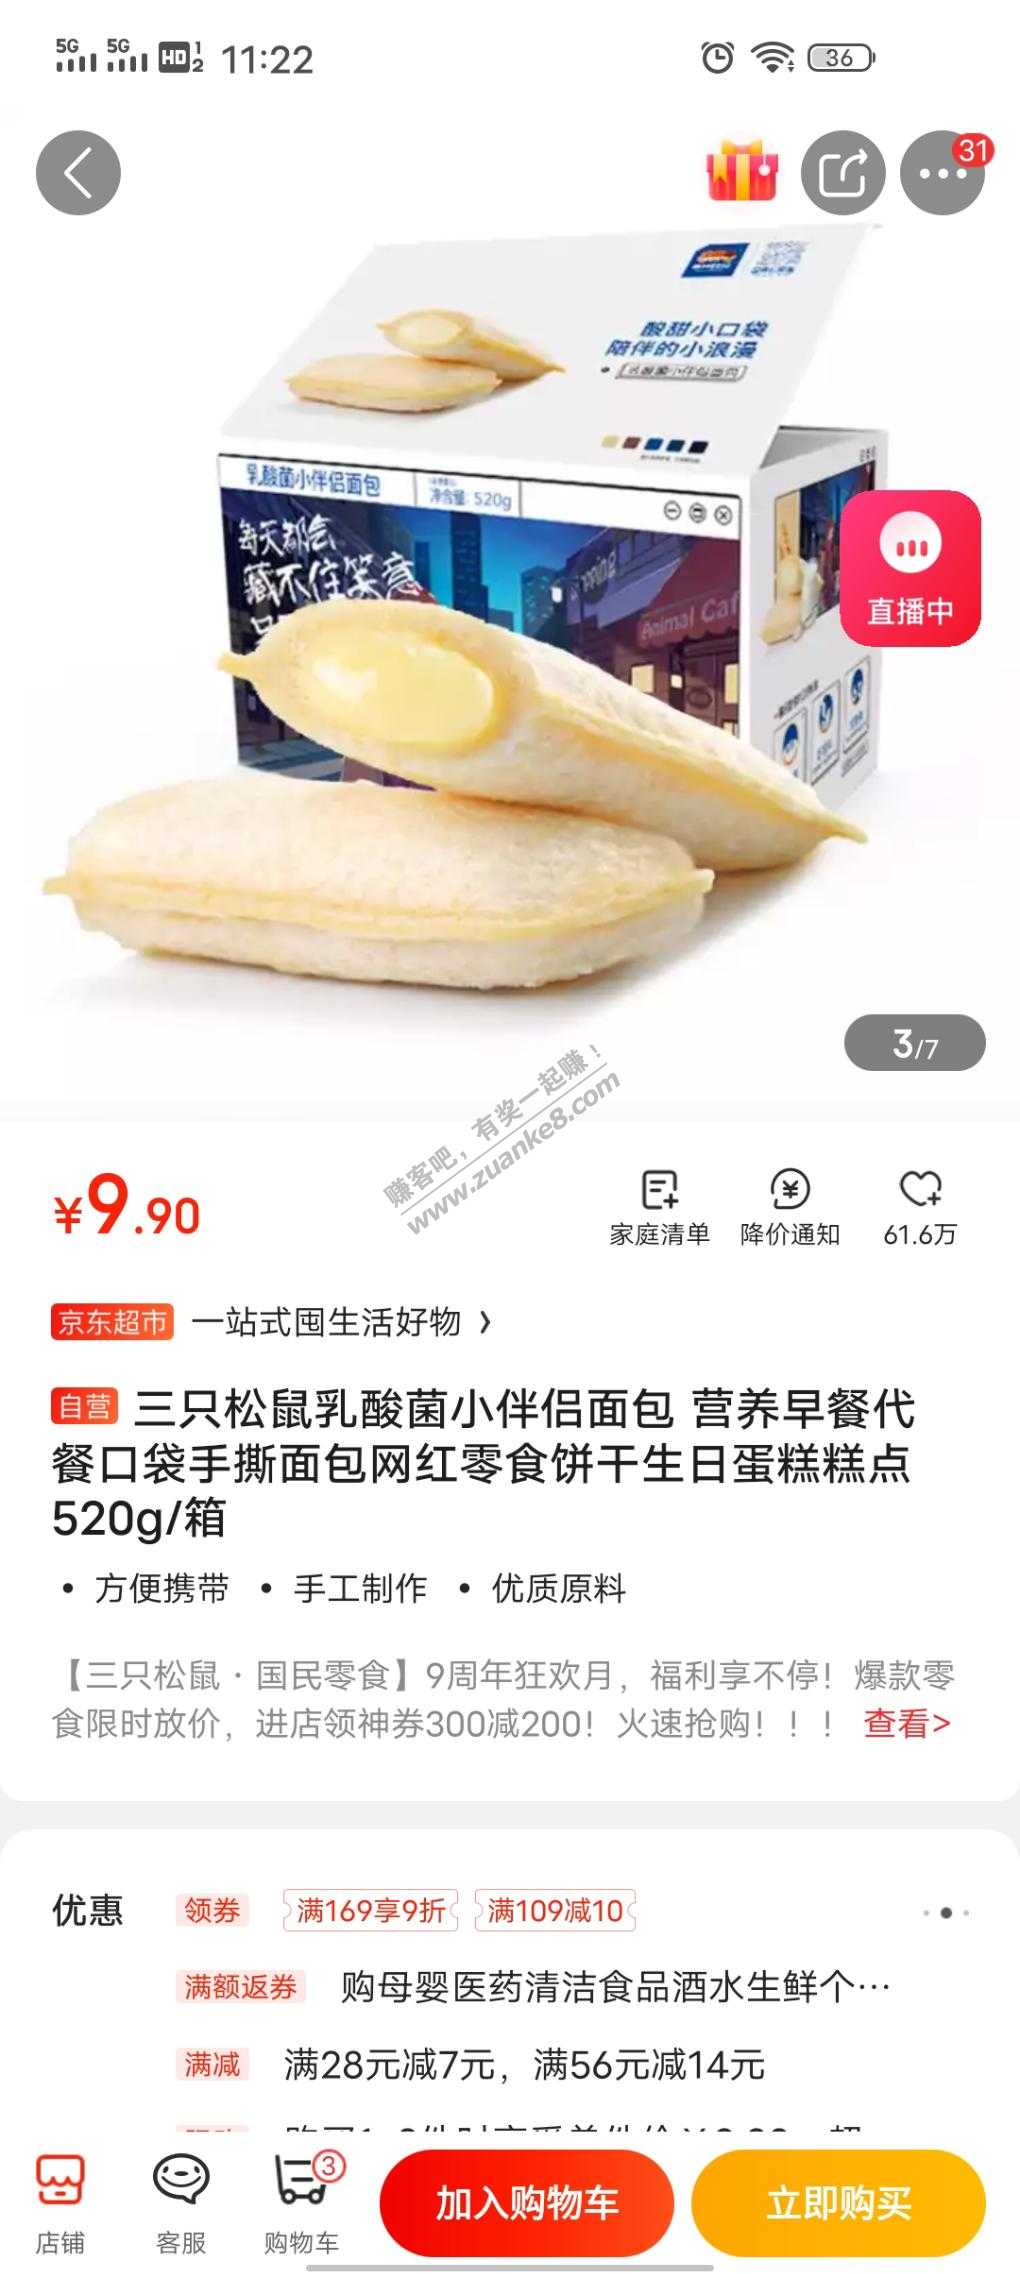 乳酸菌面包广东售9.9元-可买2件-刚需可入-惠小助(52huixz.com)